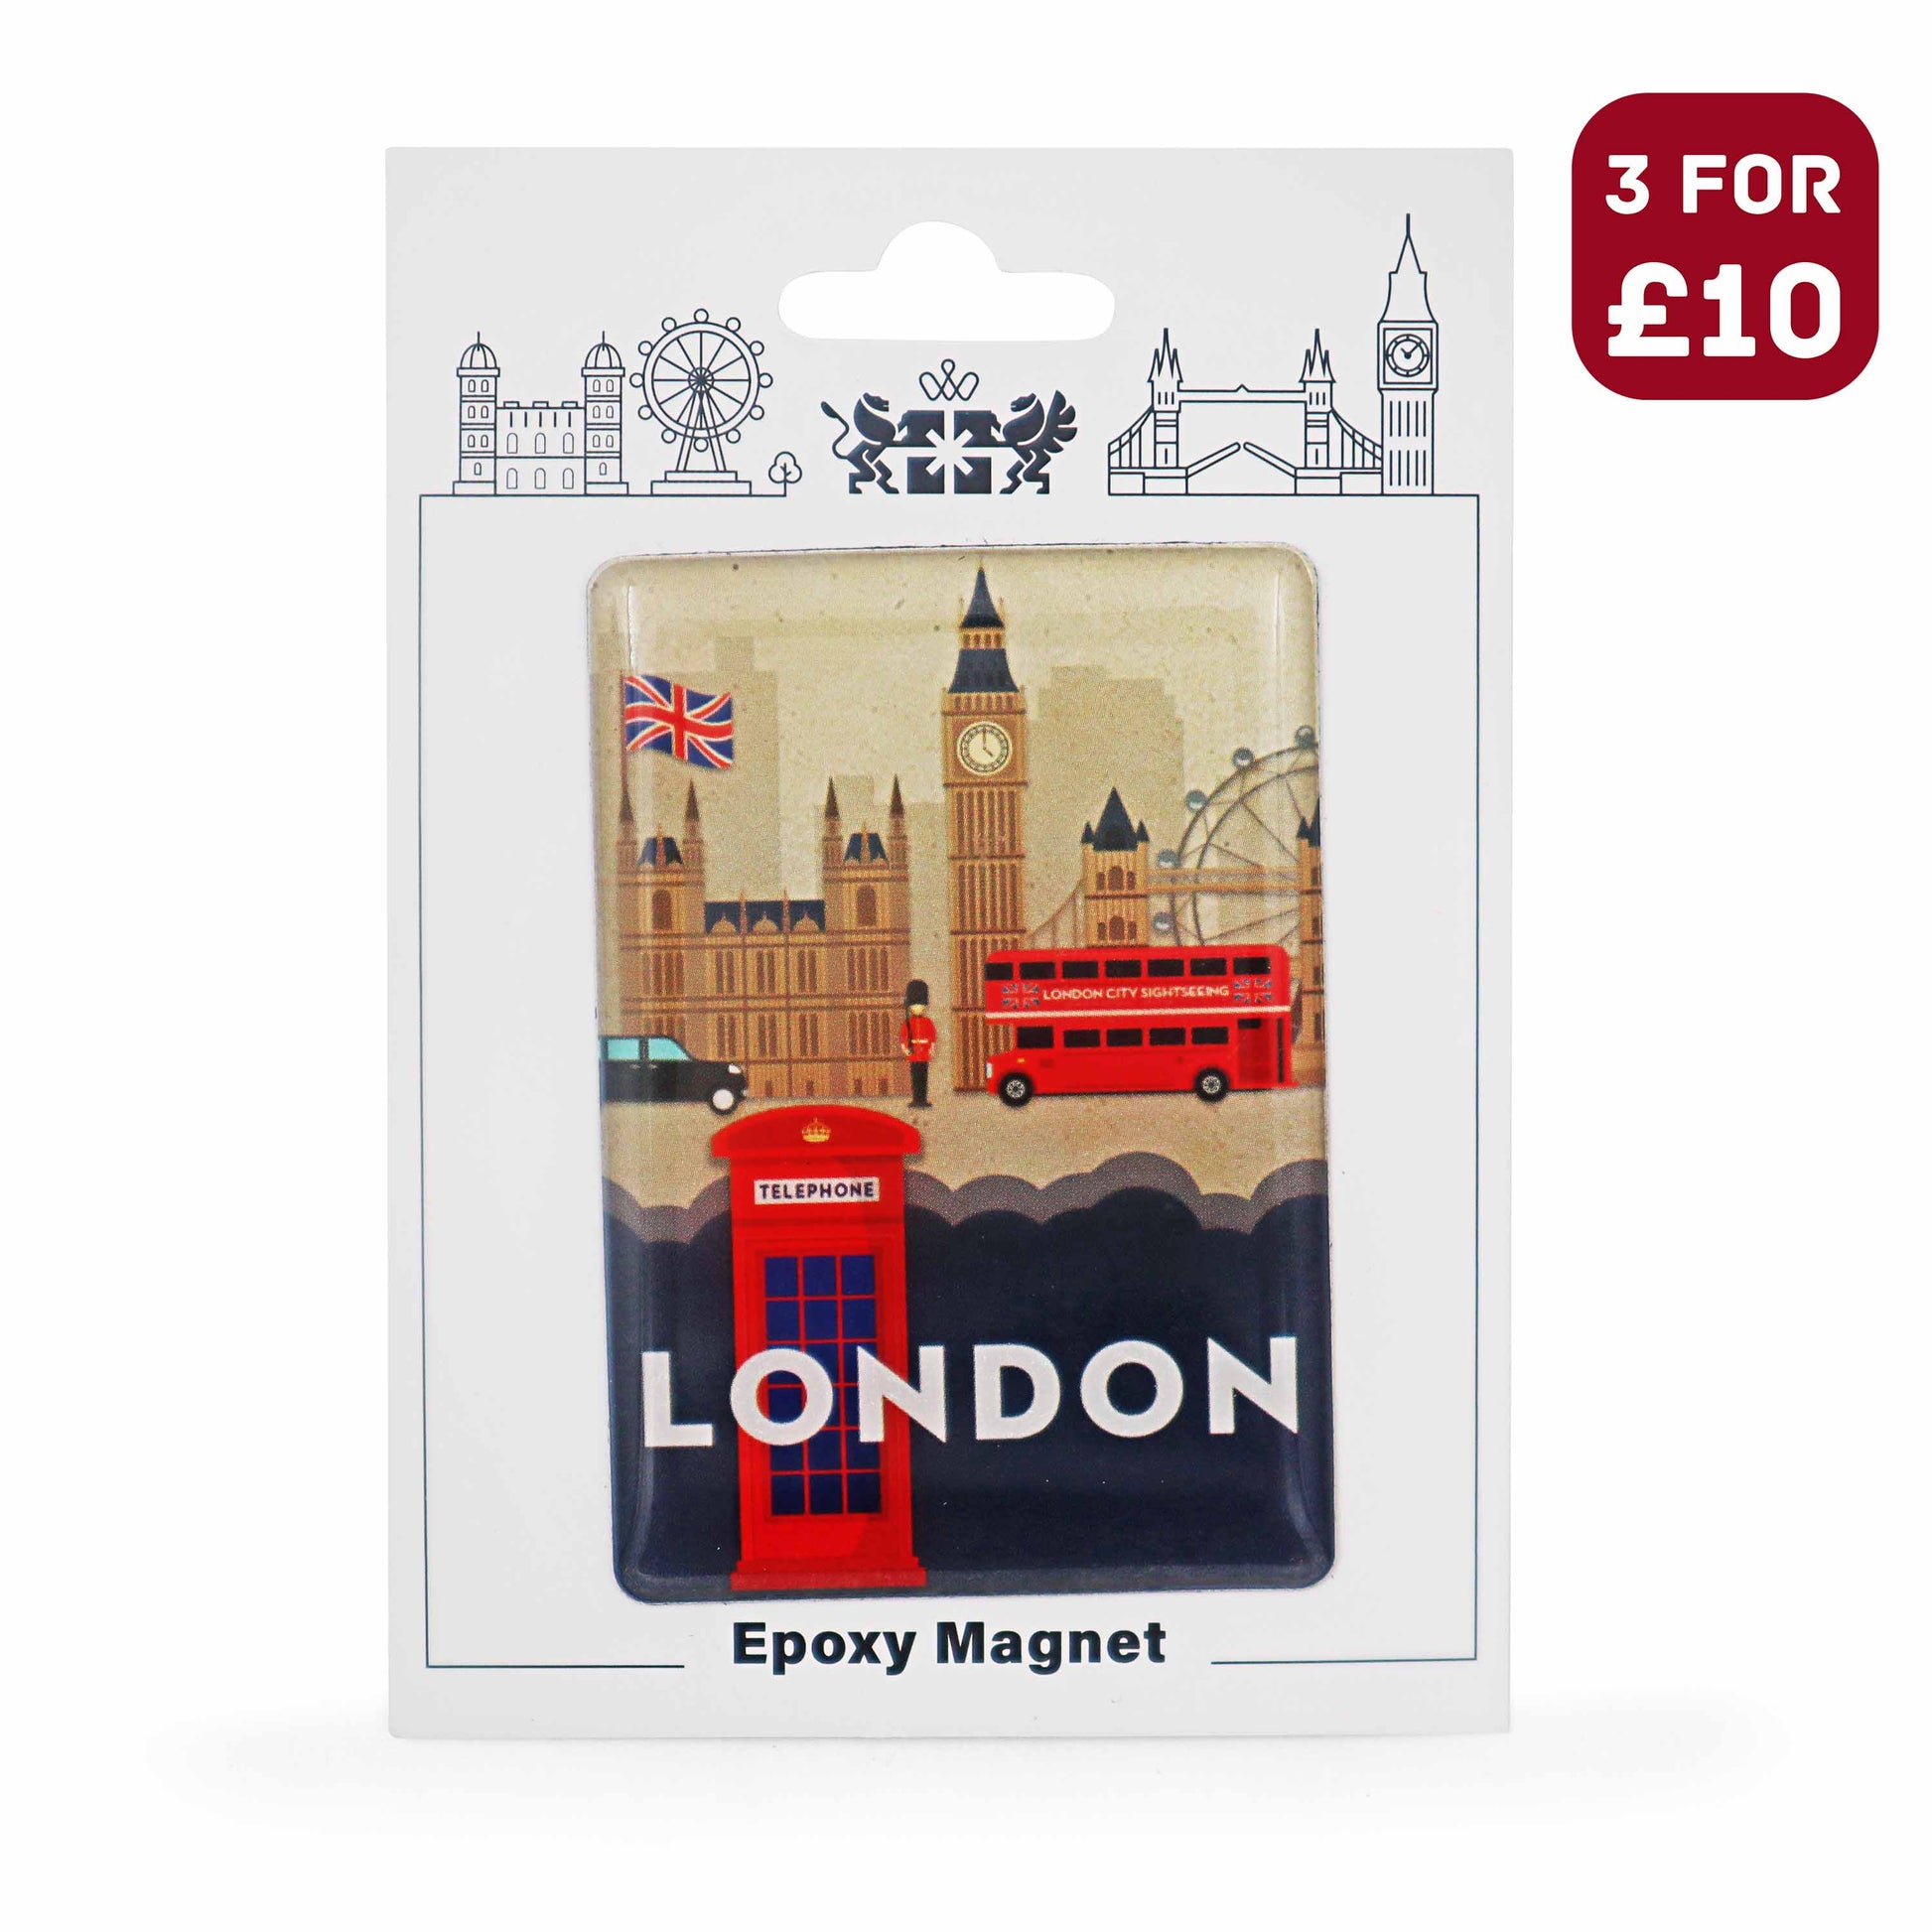 London Souvenir Epoxy Magnet - Design 9 - London Gifts